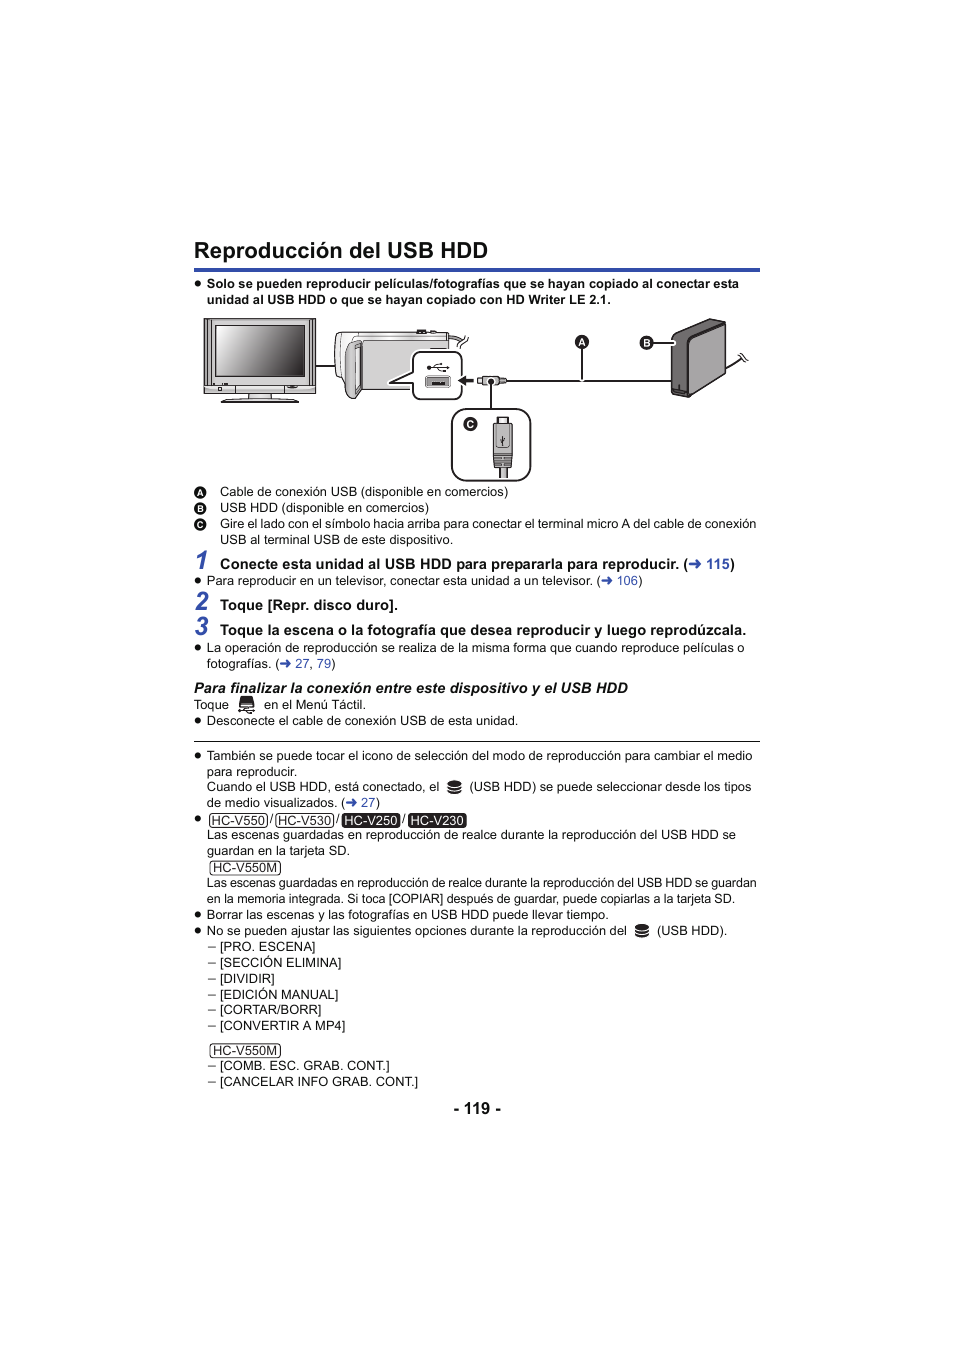 Reproducción del usb hdd | Panasonic HCV250EC Manual del usuario | Página 119 / 214